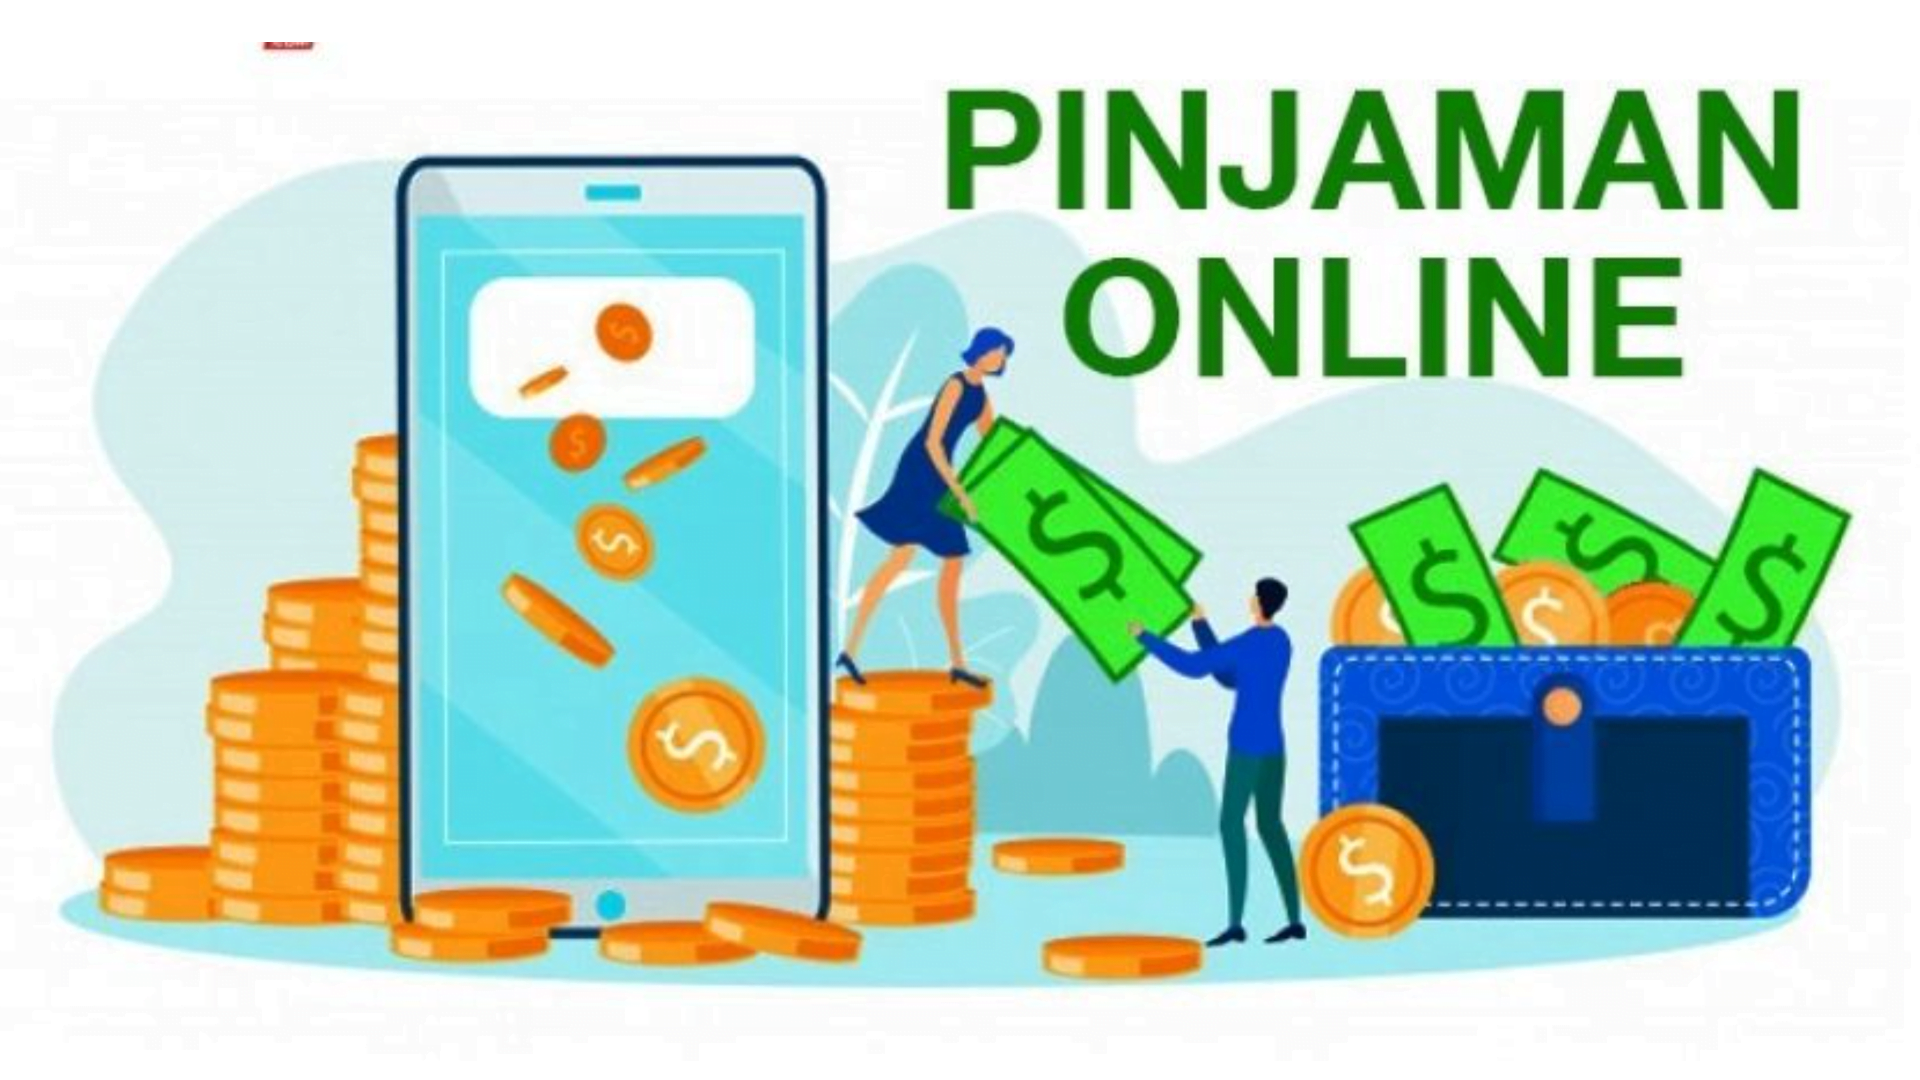 Pinjaman Online Sumatera Barat, Menyelesaikan Masalah Keuangan dengan Berkah